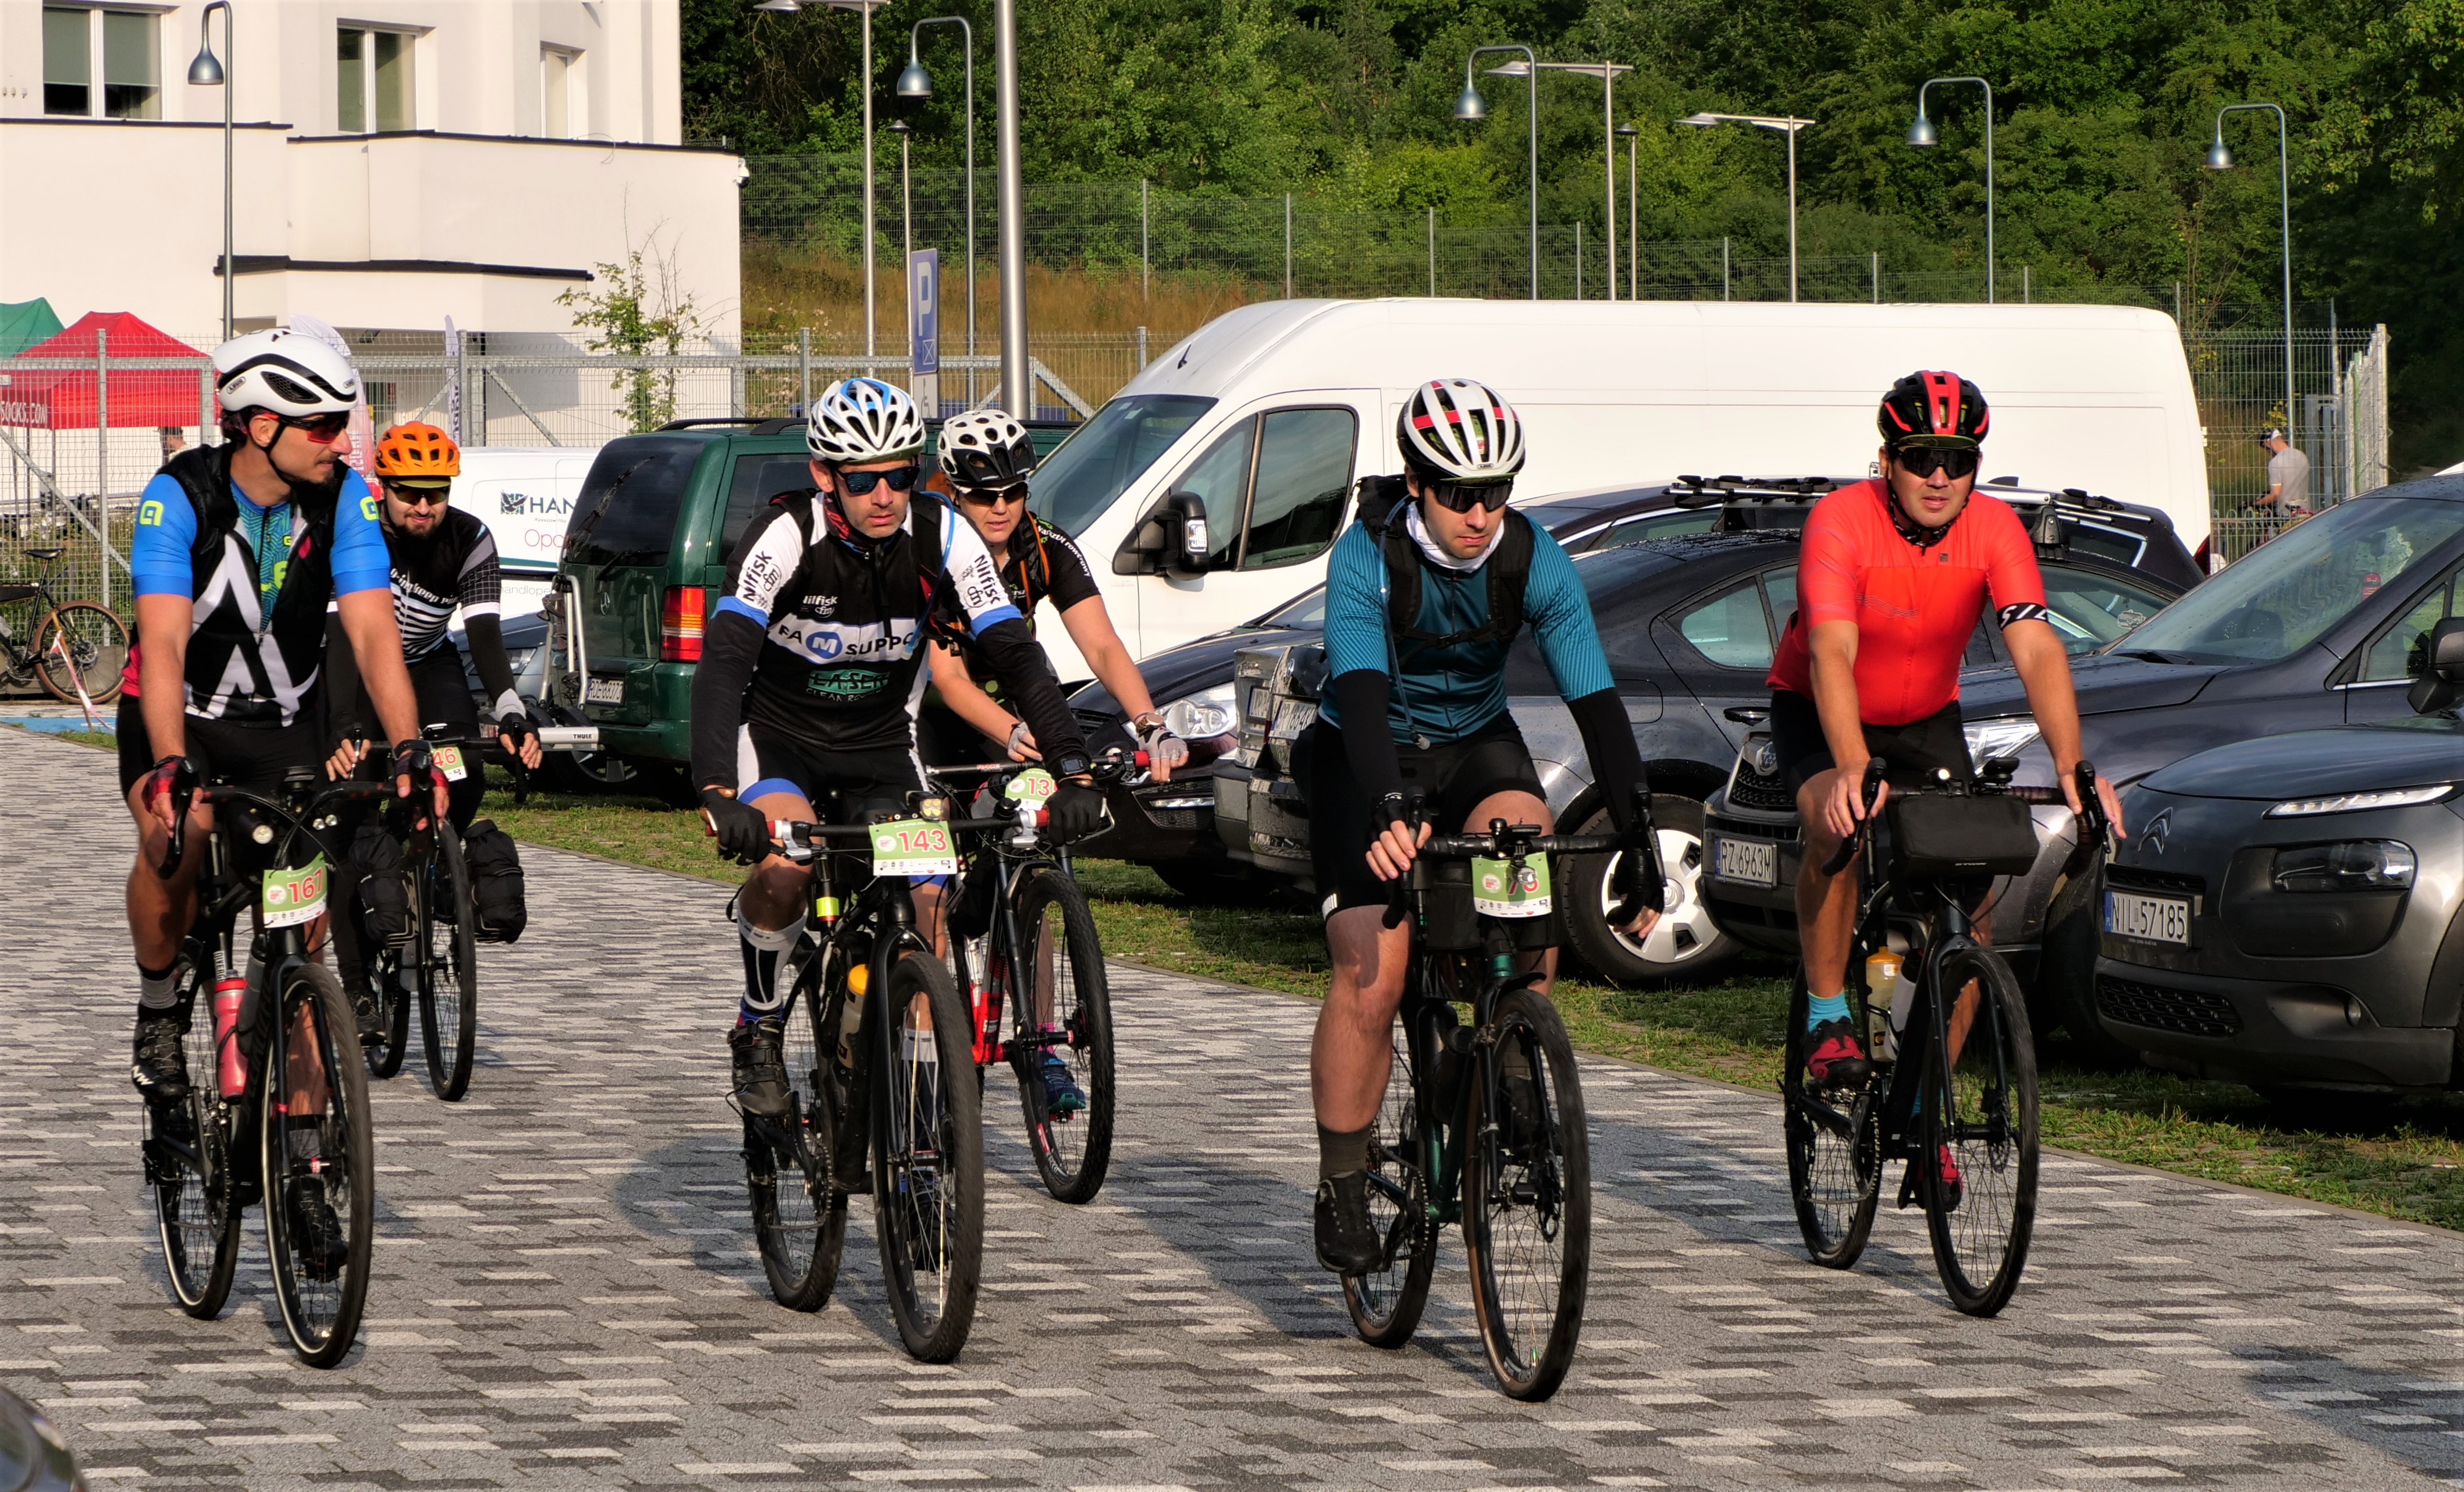 Rajd rowerowy „Brejdak Gravel”. Kilkudziesięciu rowerzystów ma do pokonania 700 km trasę drogami Lubelszczyzny (zdjęcia)